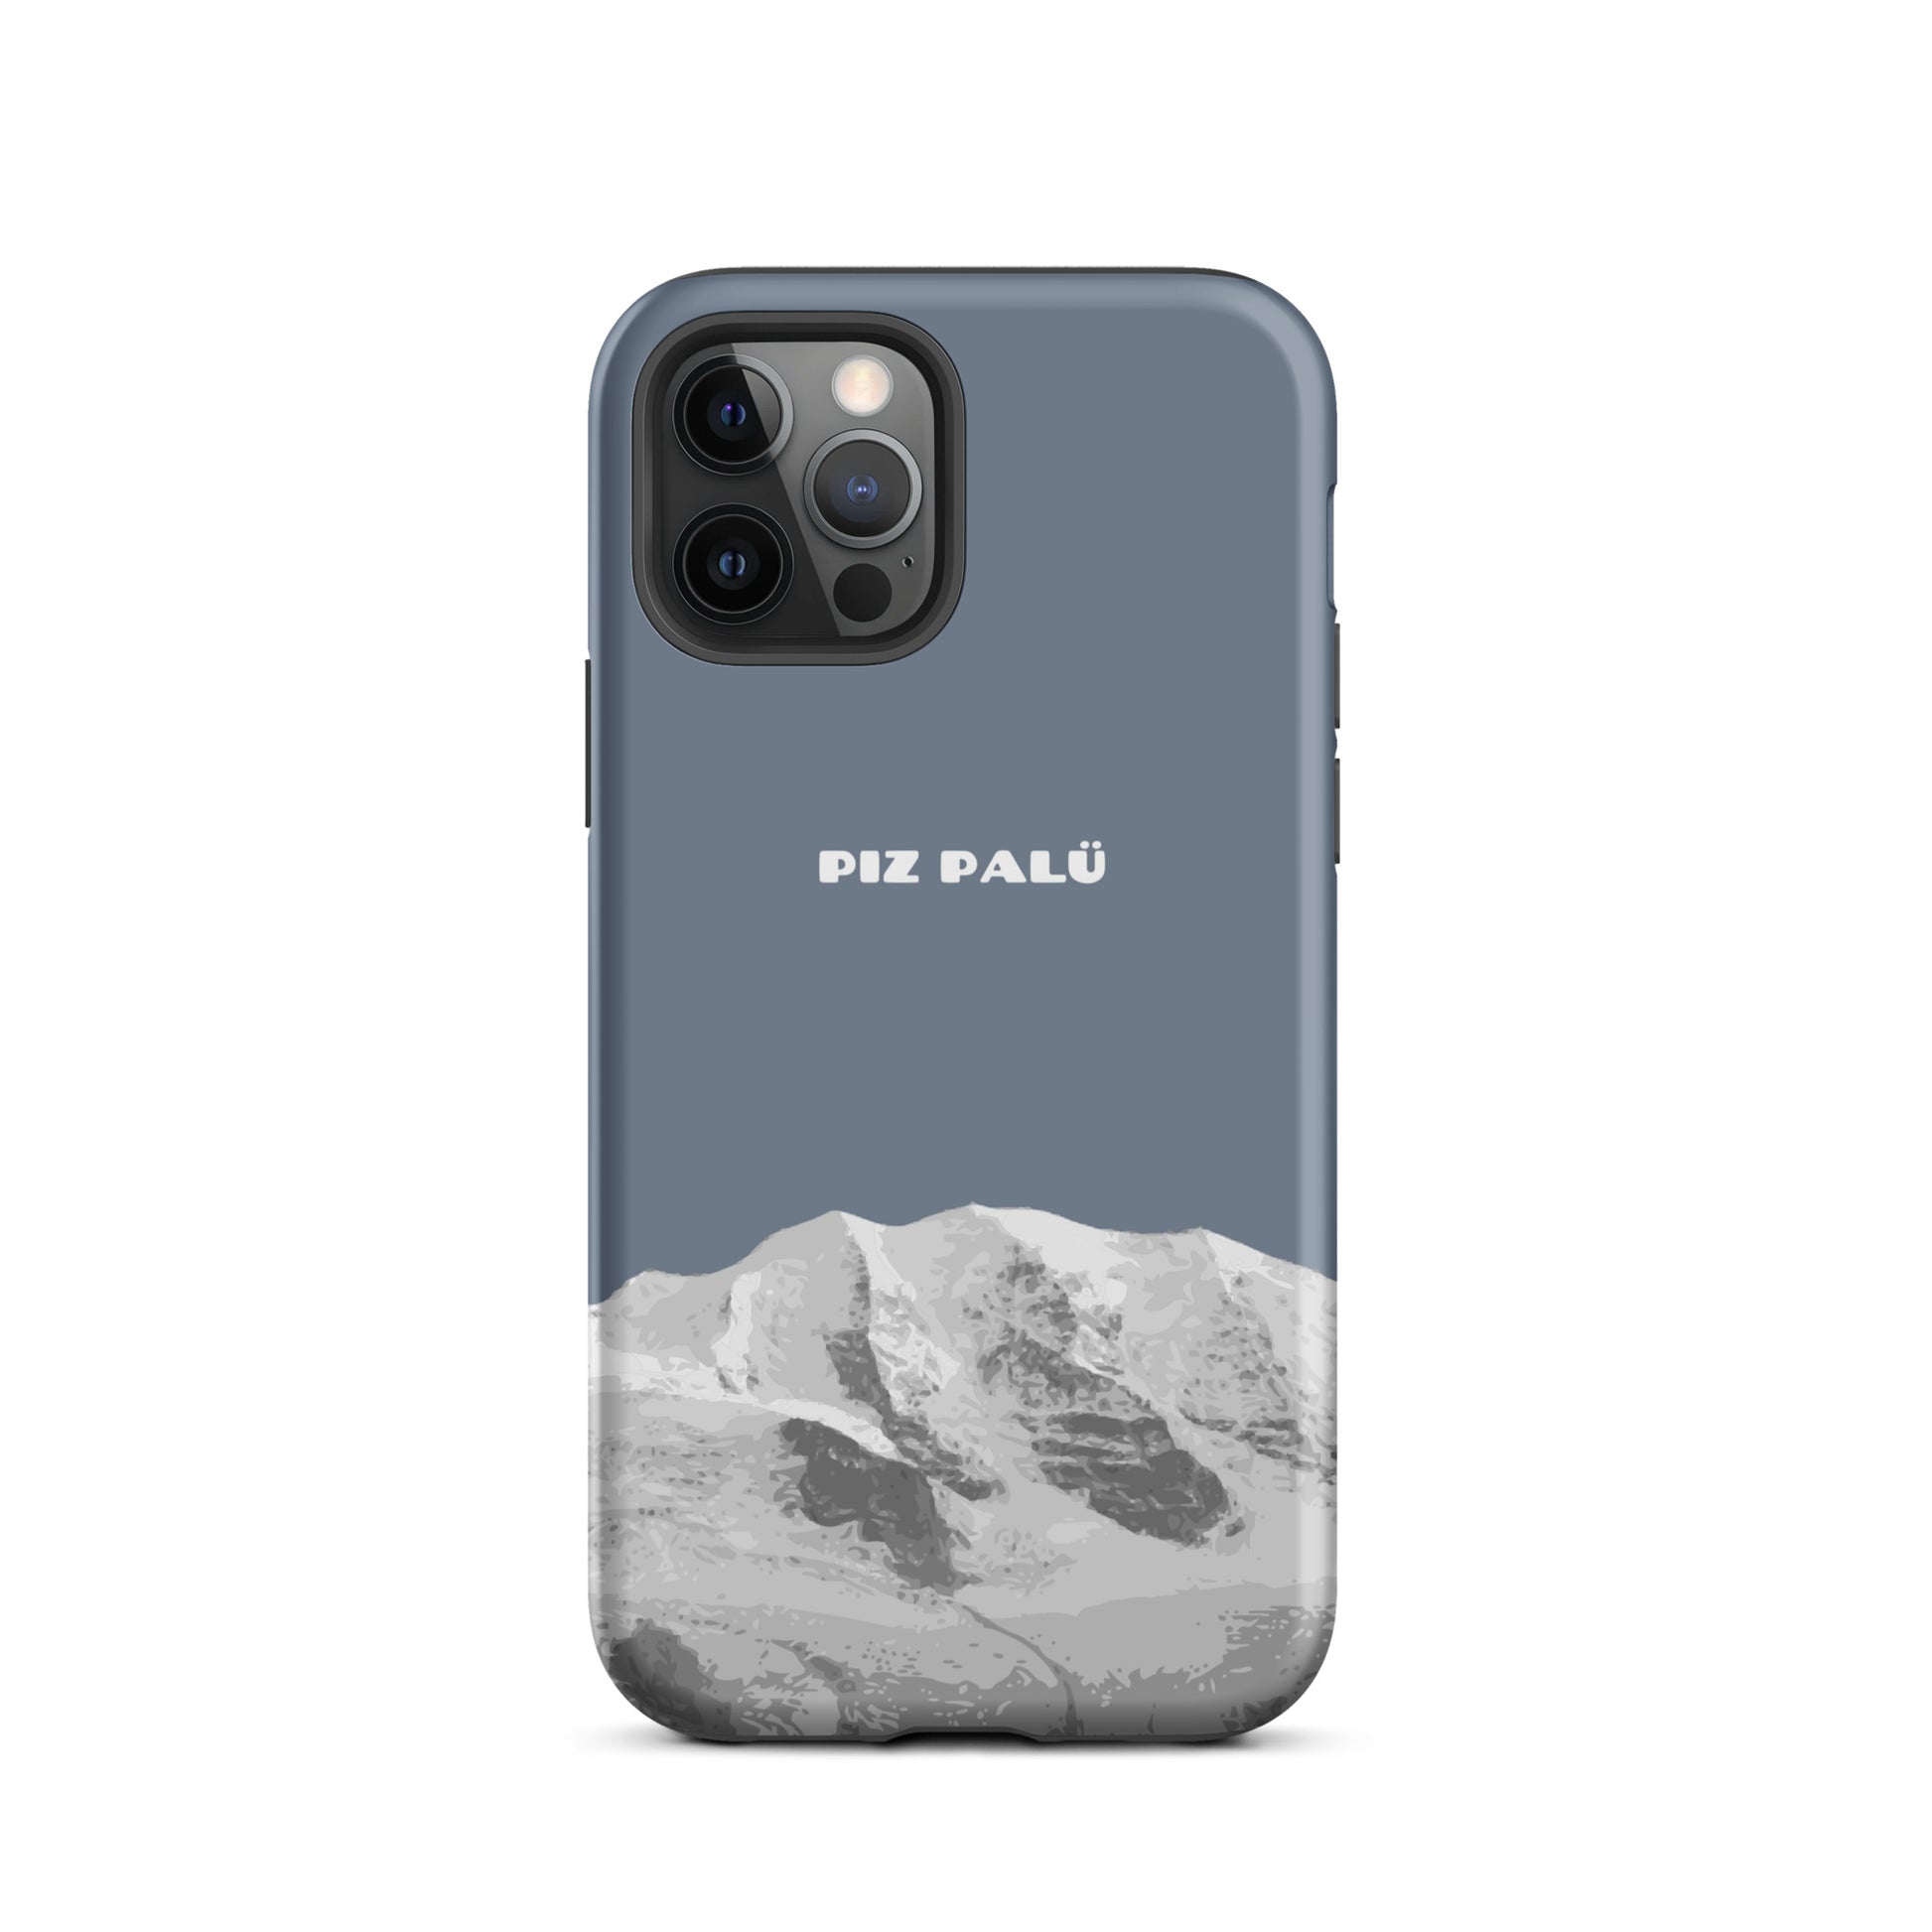 Hülle für das iPhone 12 Pro von Apple in der Farbe Schiefergrau, dass den Piz Palü in Graubünden zeigt.